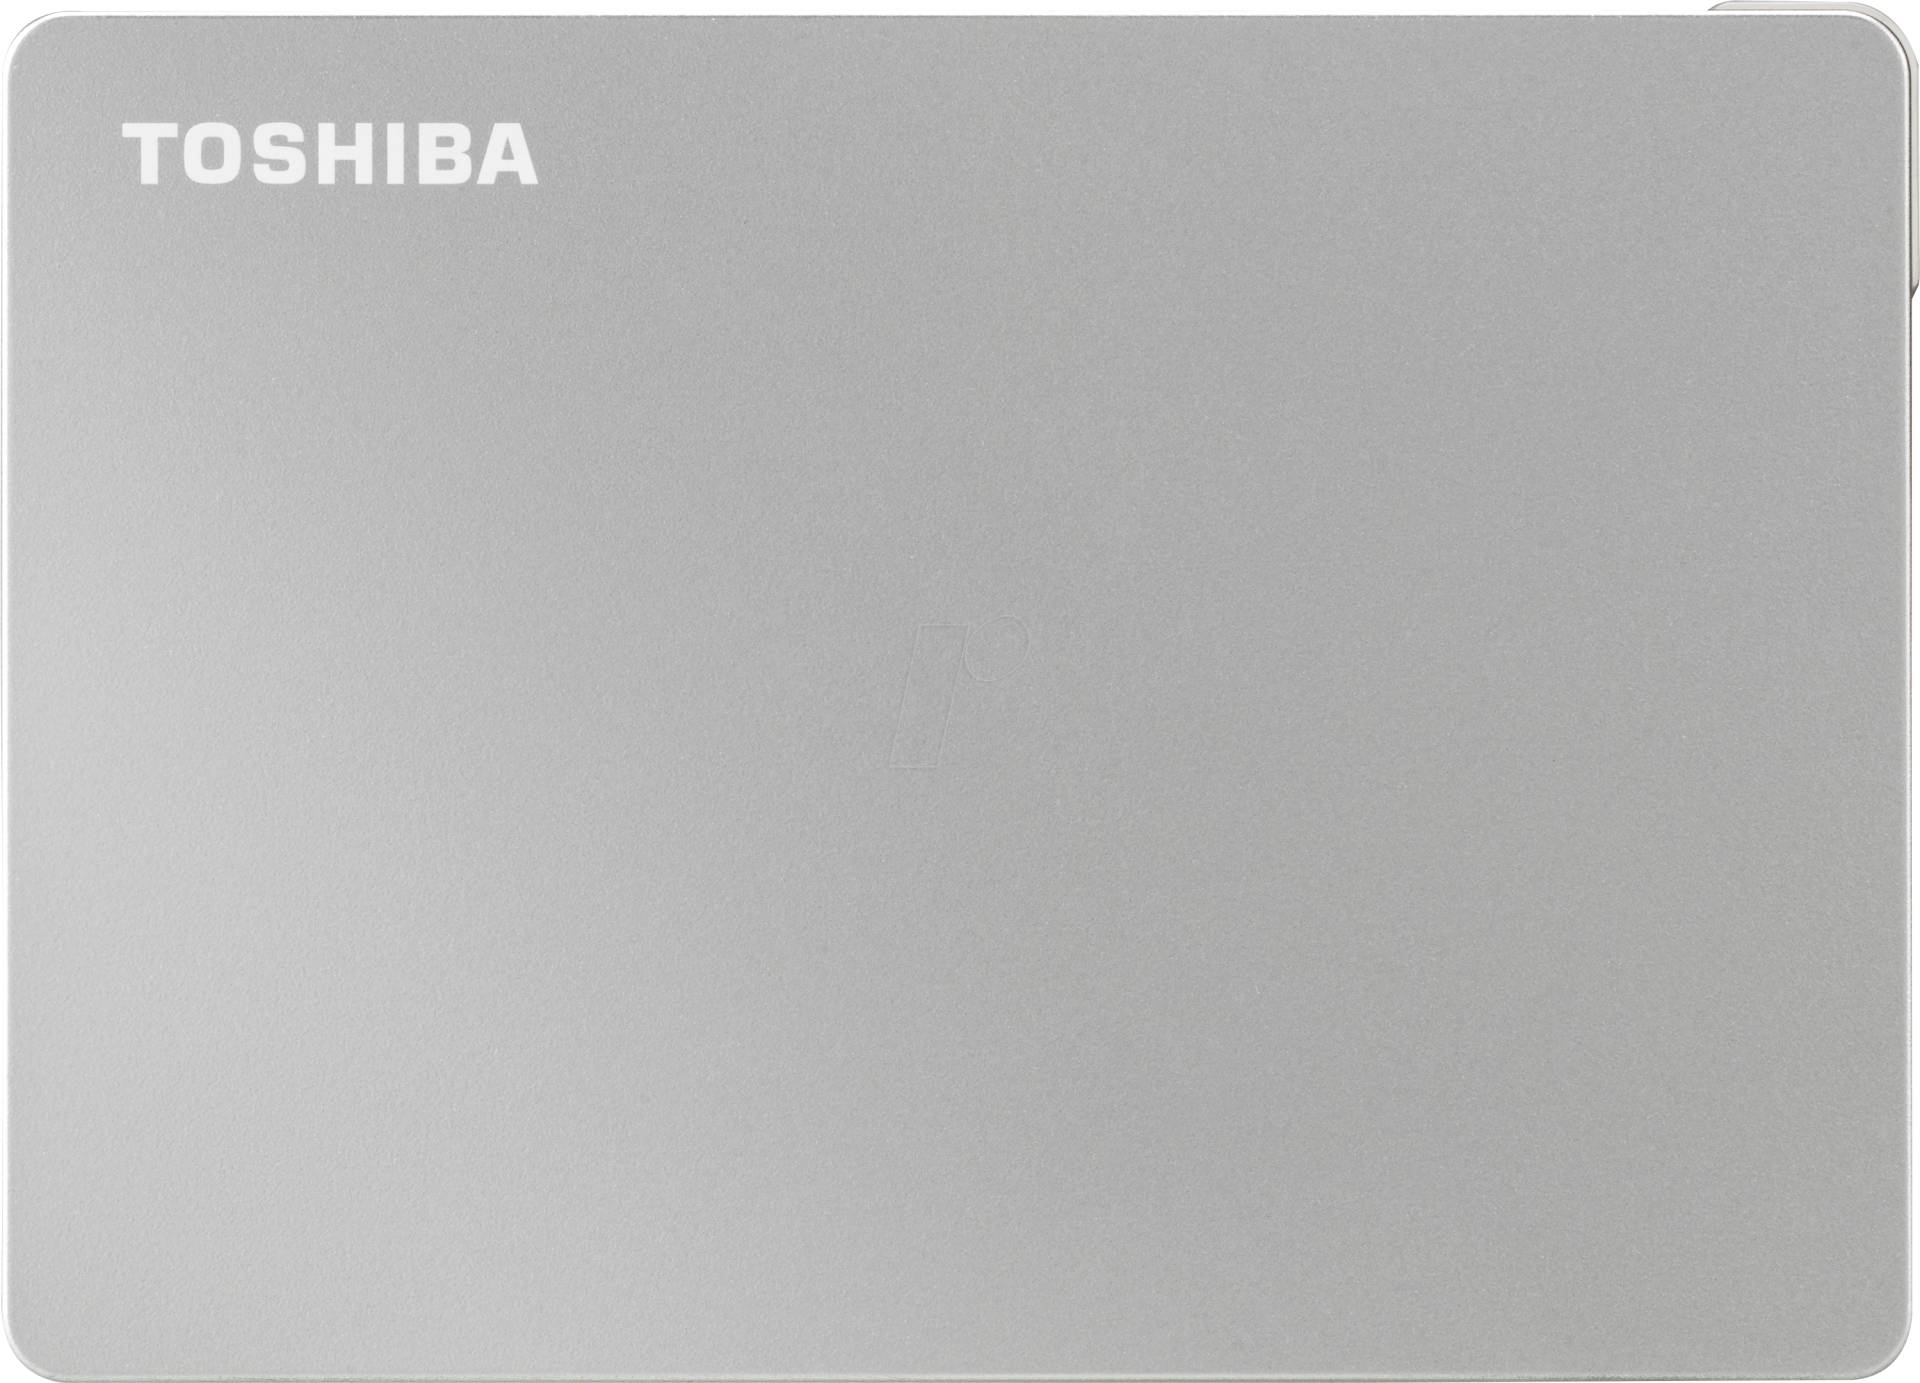 CANVIO FLEX 1 - Toshiba Canvio Flex silber 1TB von Toshiba